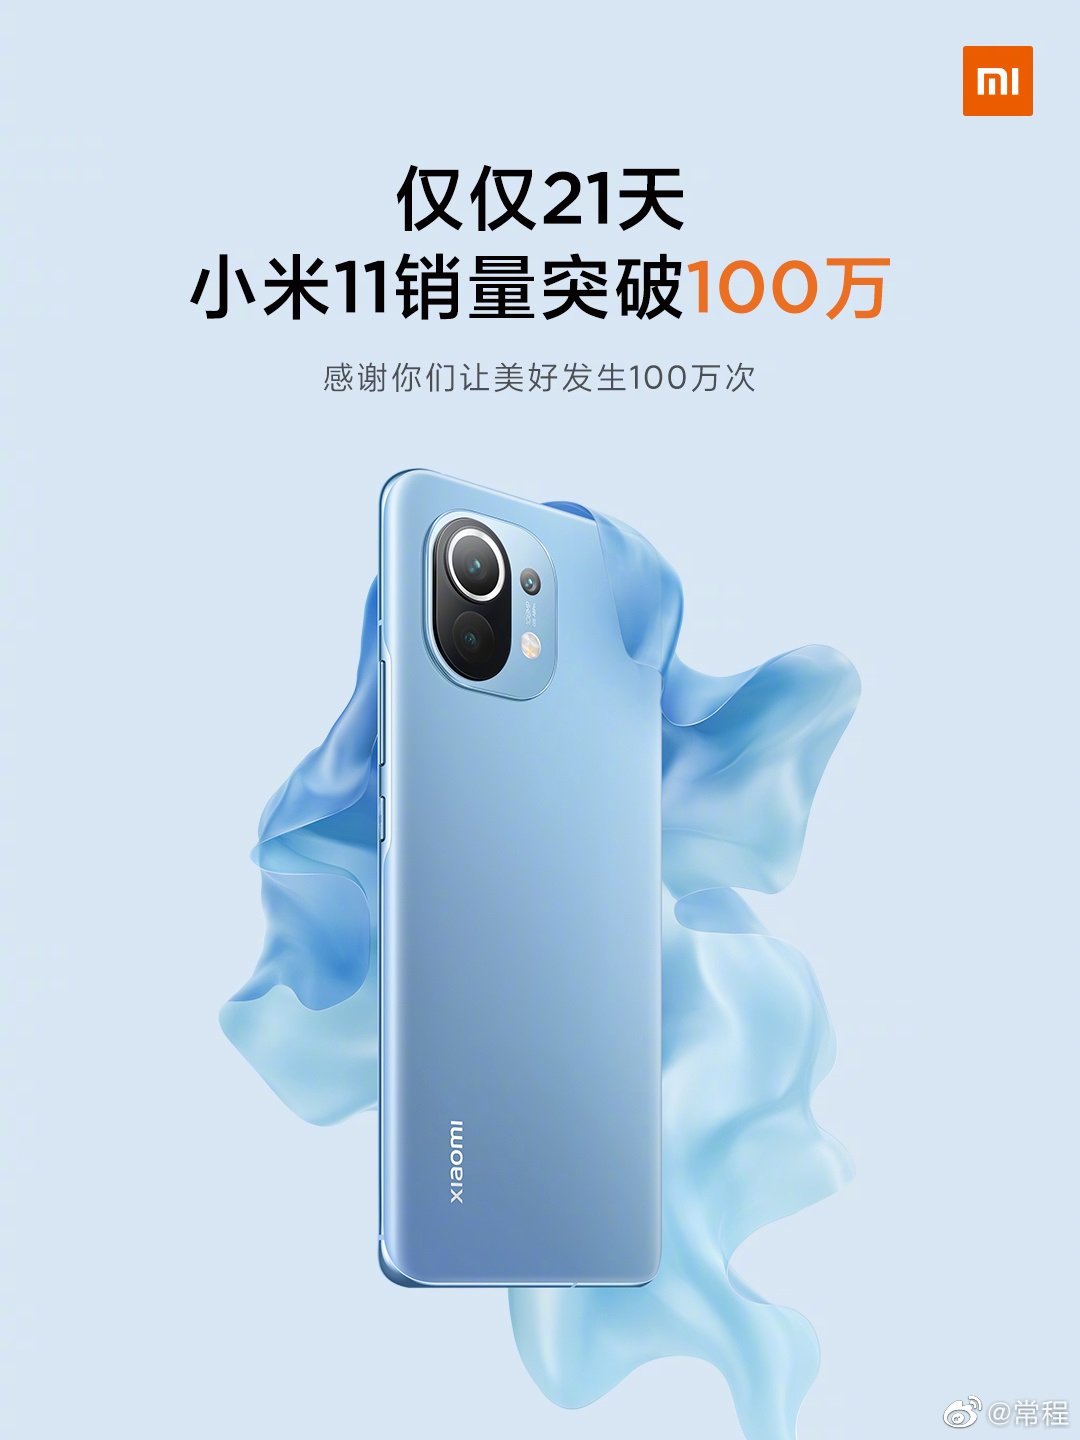 Xiaomi Mi 11 millioner solgte enheder